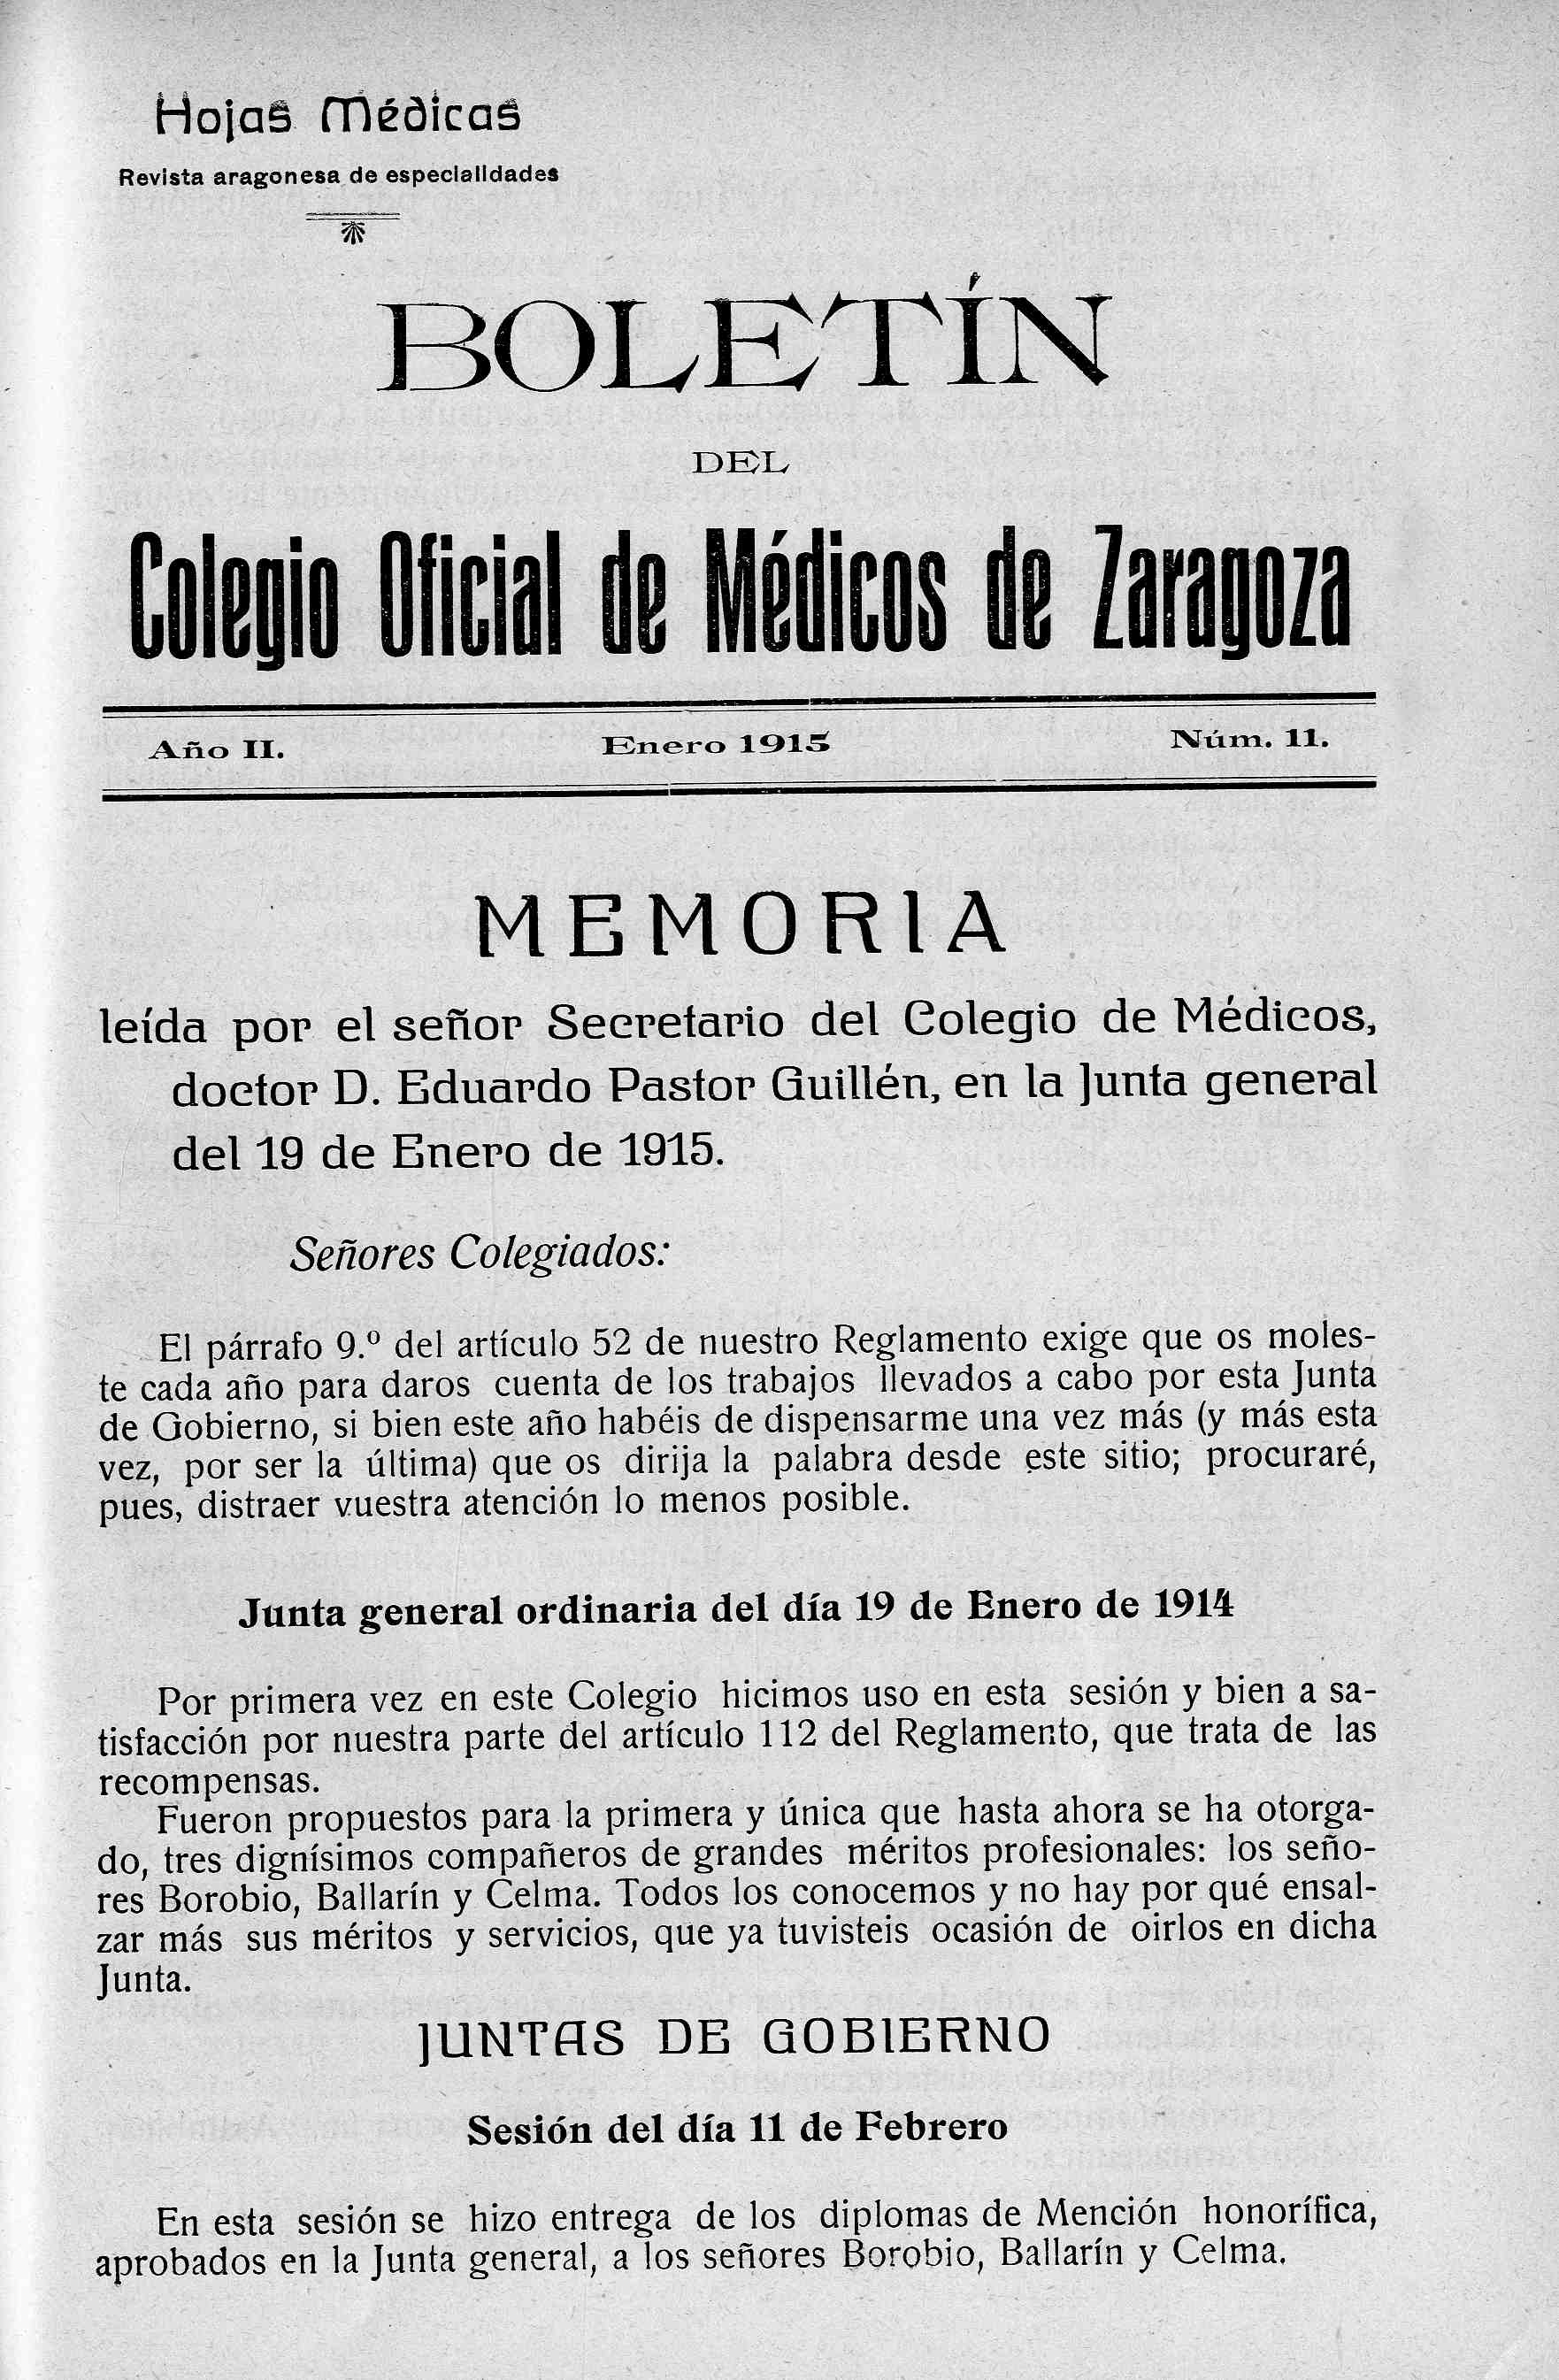 Boletín del  Colegio Oficial de Médicos de  Zaragoza. Boletín de Hojas Médicas, Año 2, II (1915)